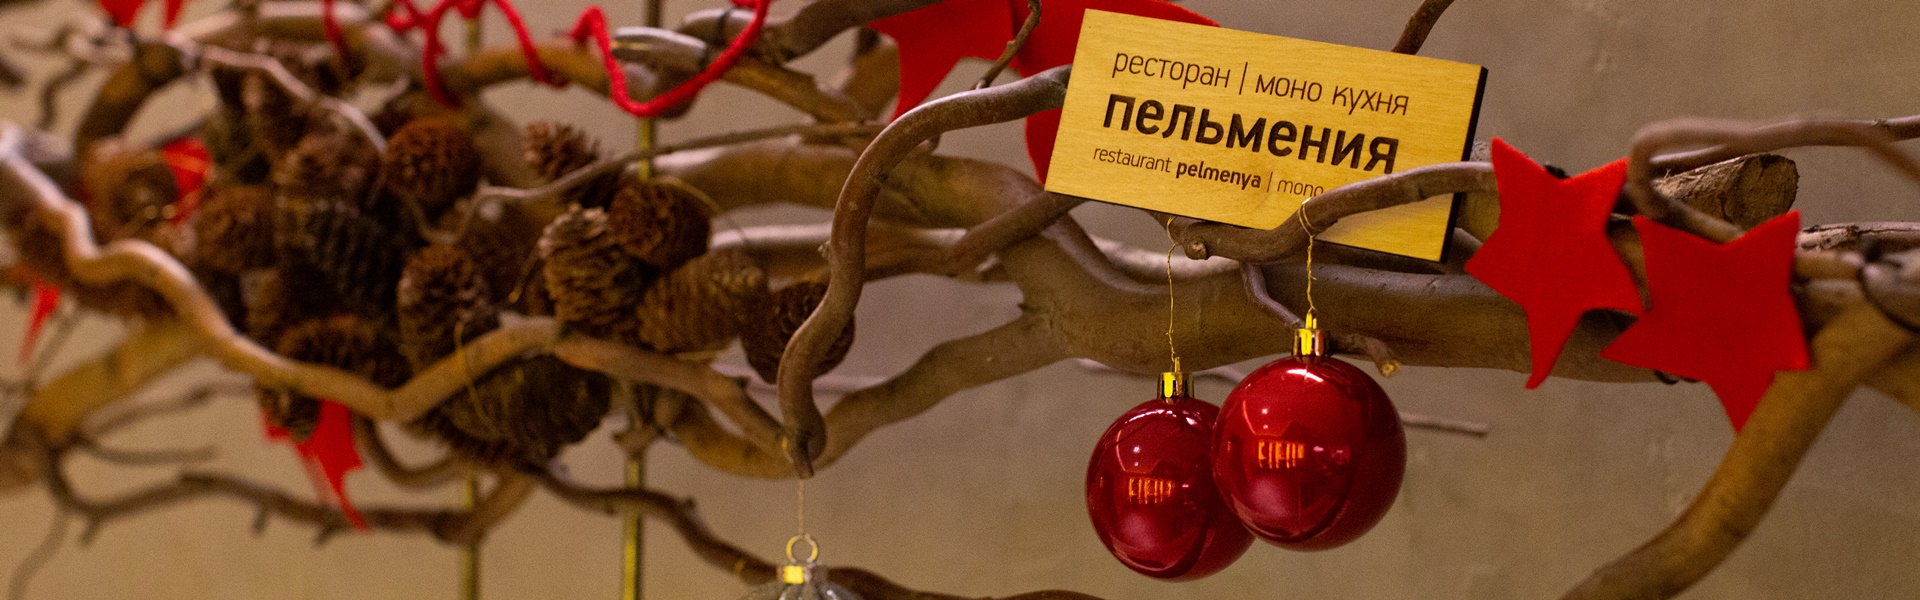 Где поесть после прогулки по новогоднему Иркутску?